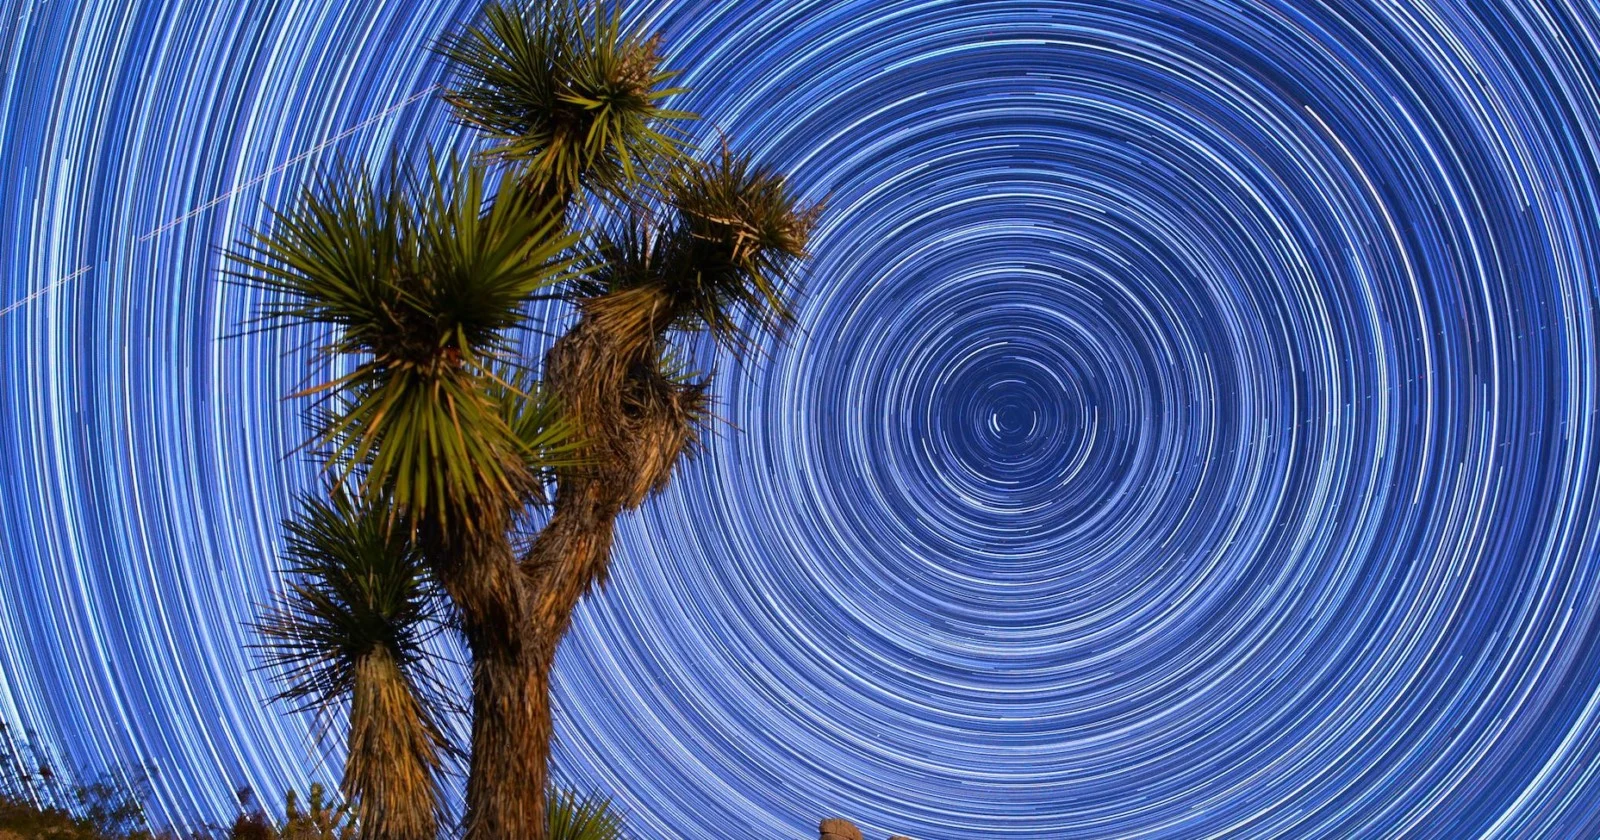 Mojave Çölü'nde yıldızlar ve dolunay eşliğinde muazzam bir timelapse! PANASONIC